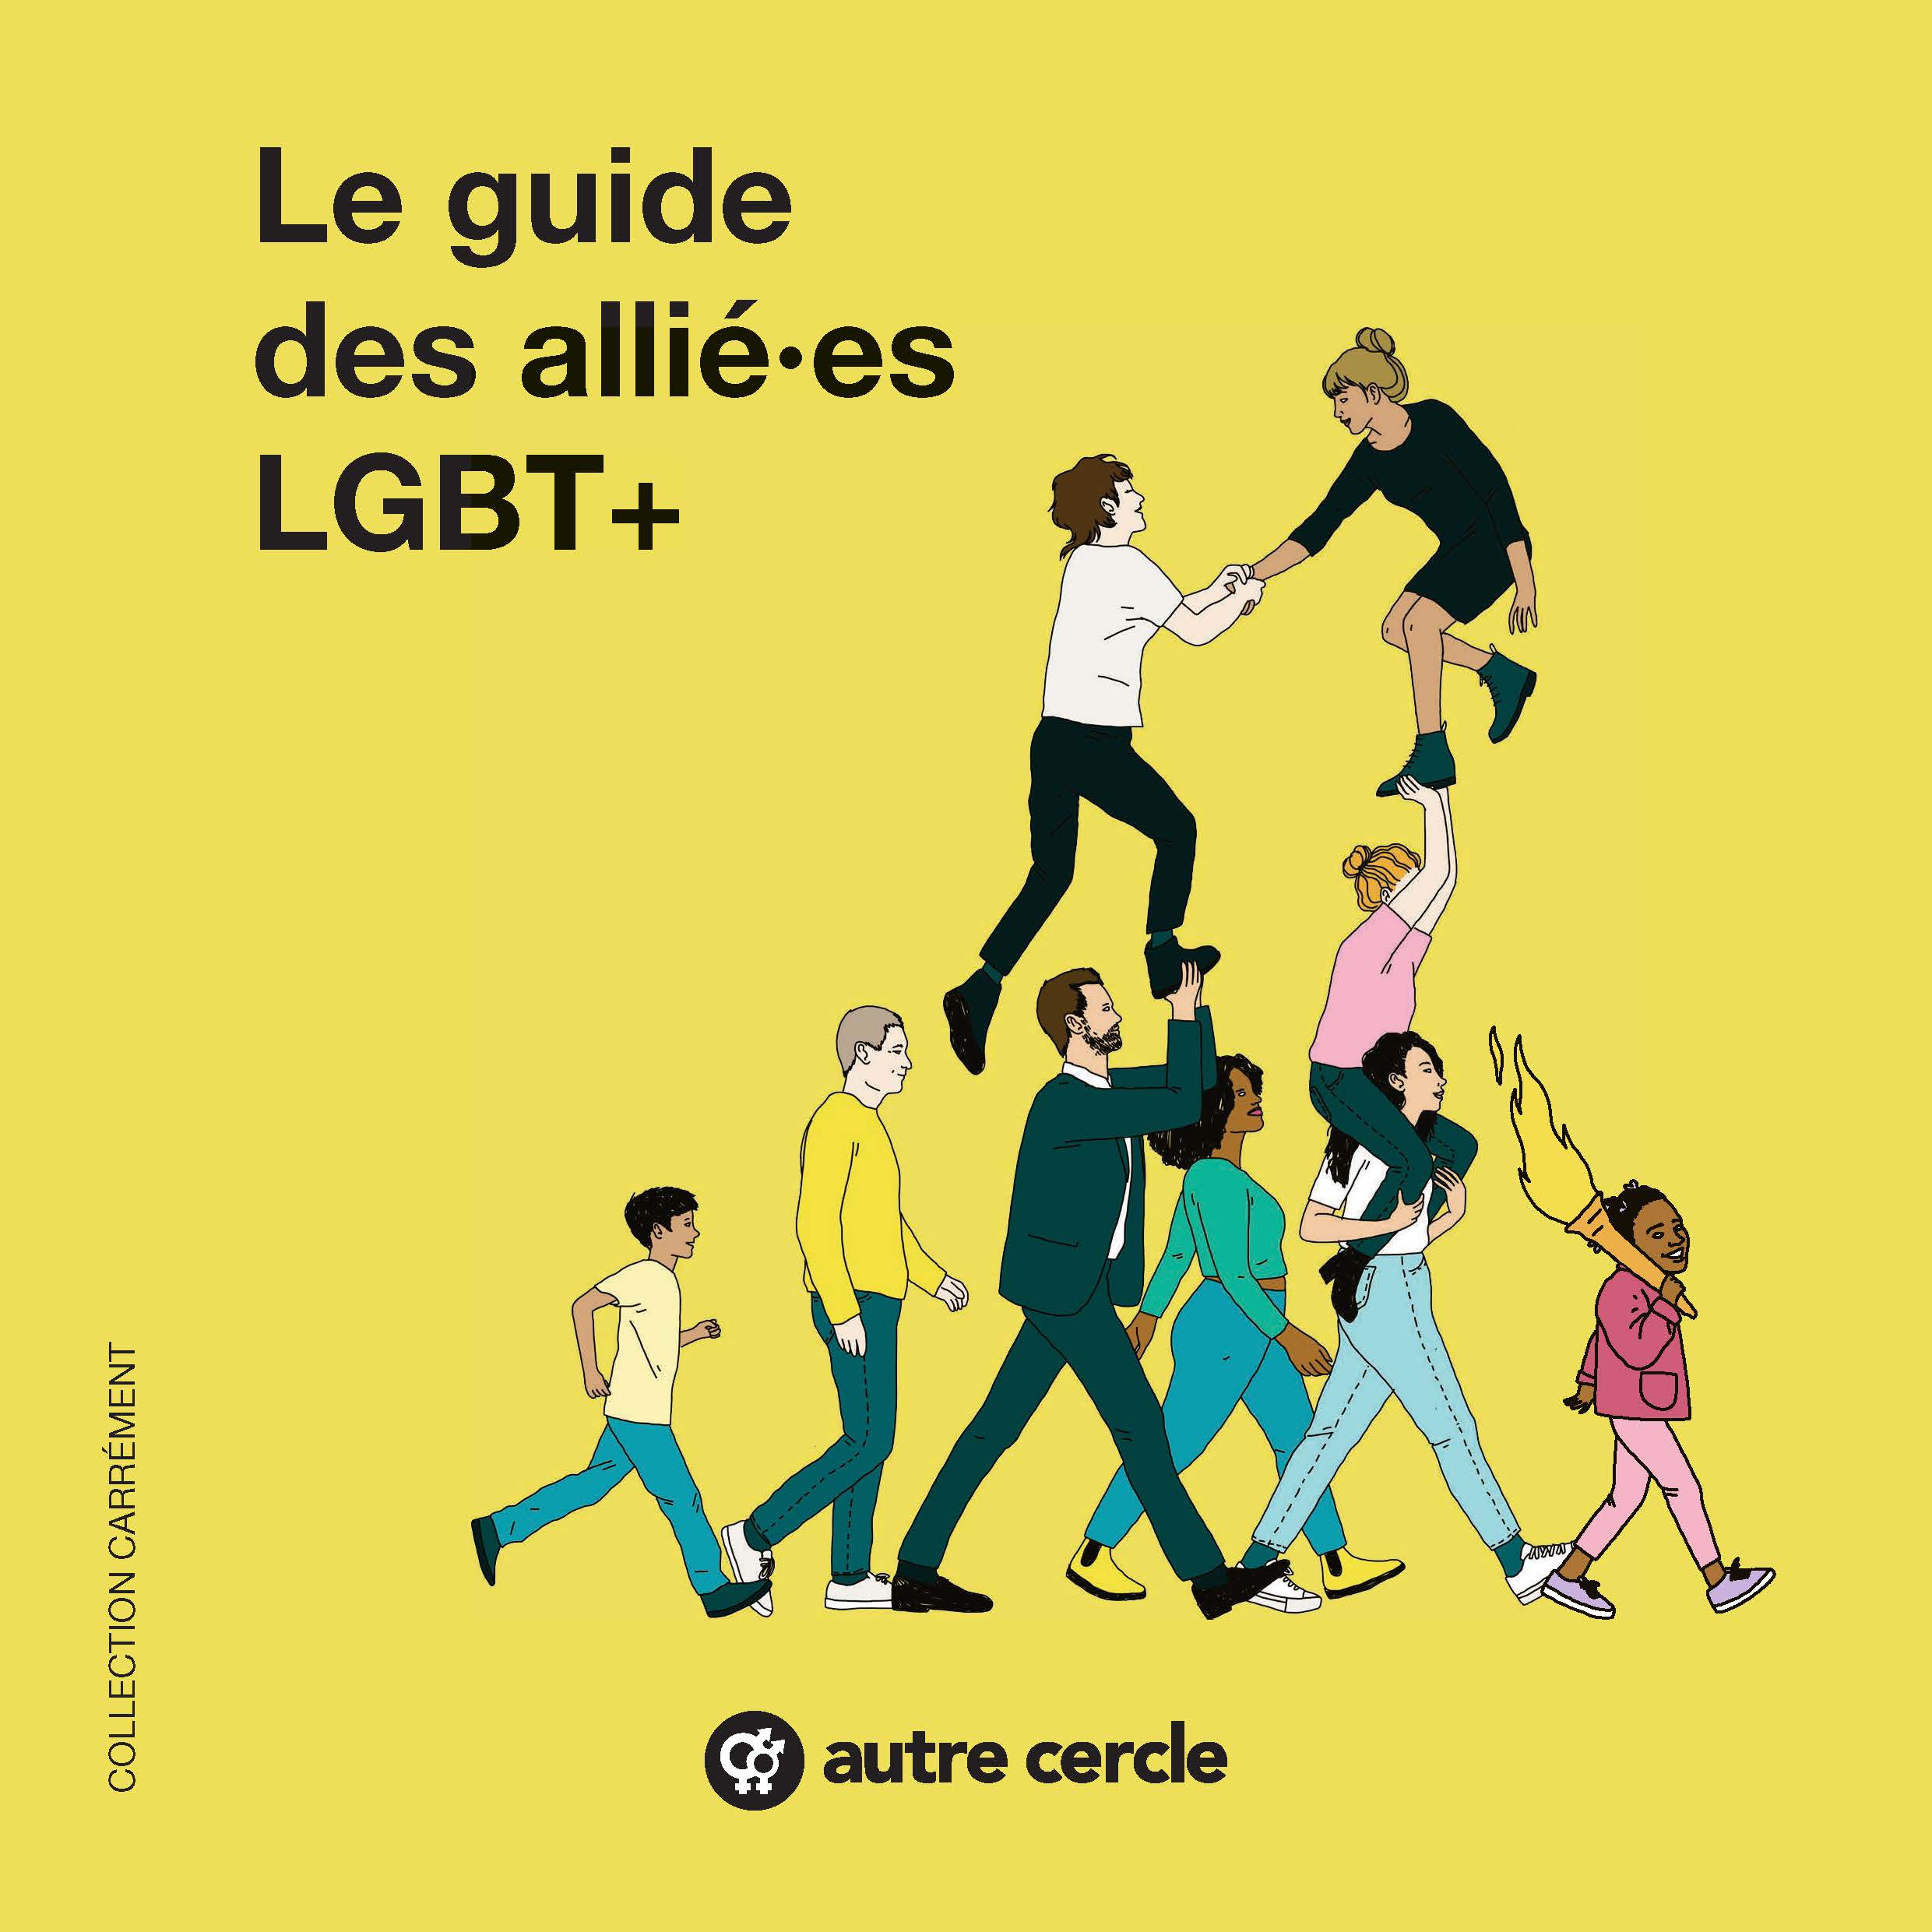 Le guide des allié·es LGBT+